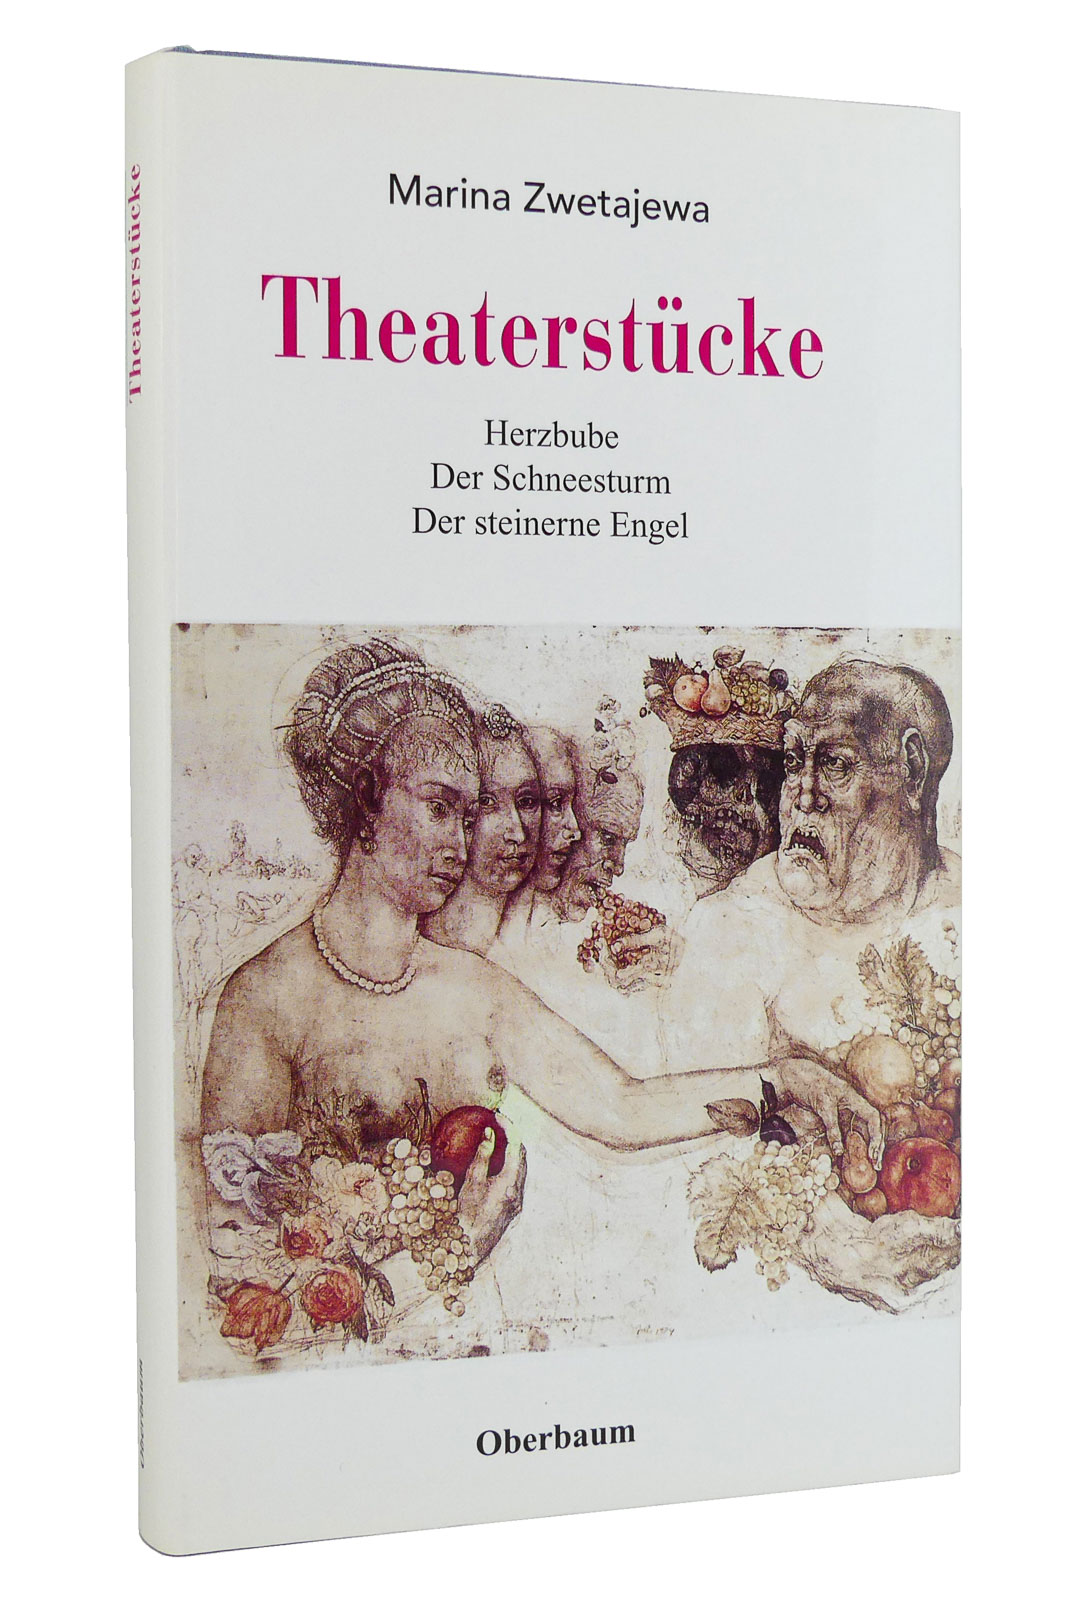 Theaterstücke : Herzbube. Der Schneesturm. Der steinerne Engel - Zwetajewa, Marina; Heinrichs, Siegfried [Hg.]